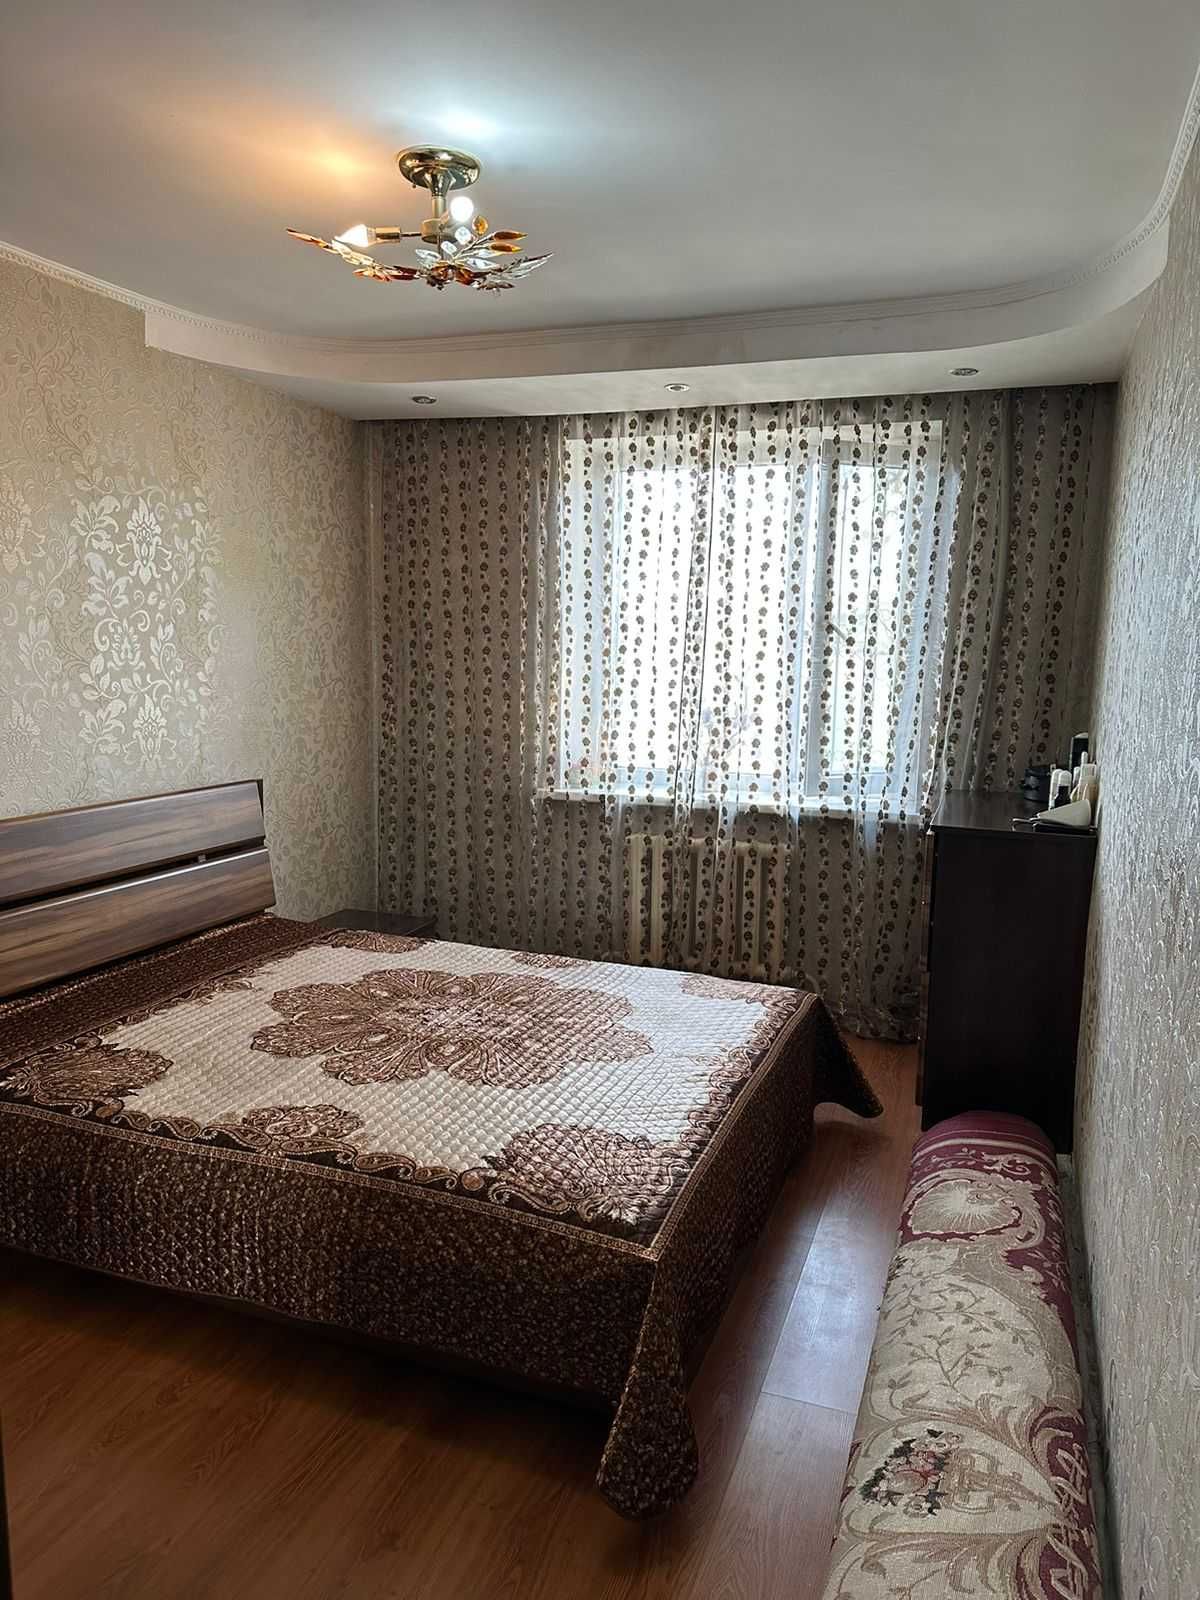 Продается 3-х комнатная квартира Ескельдинский р-н